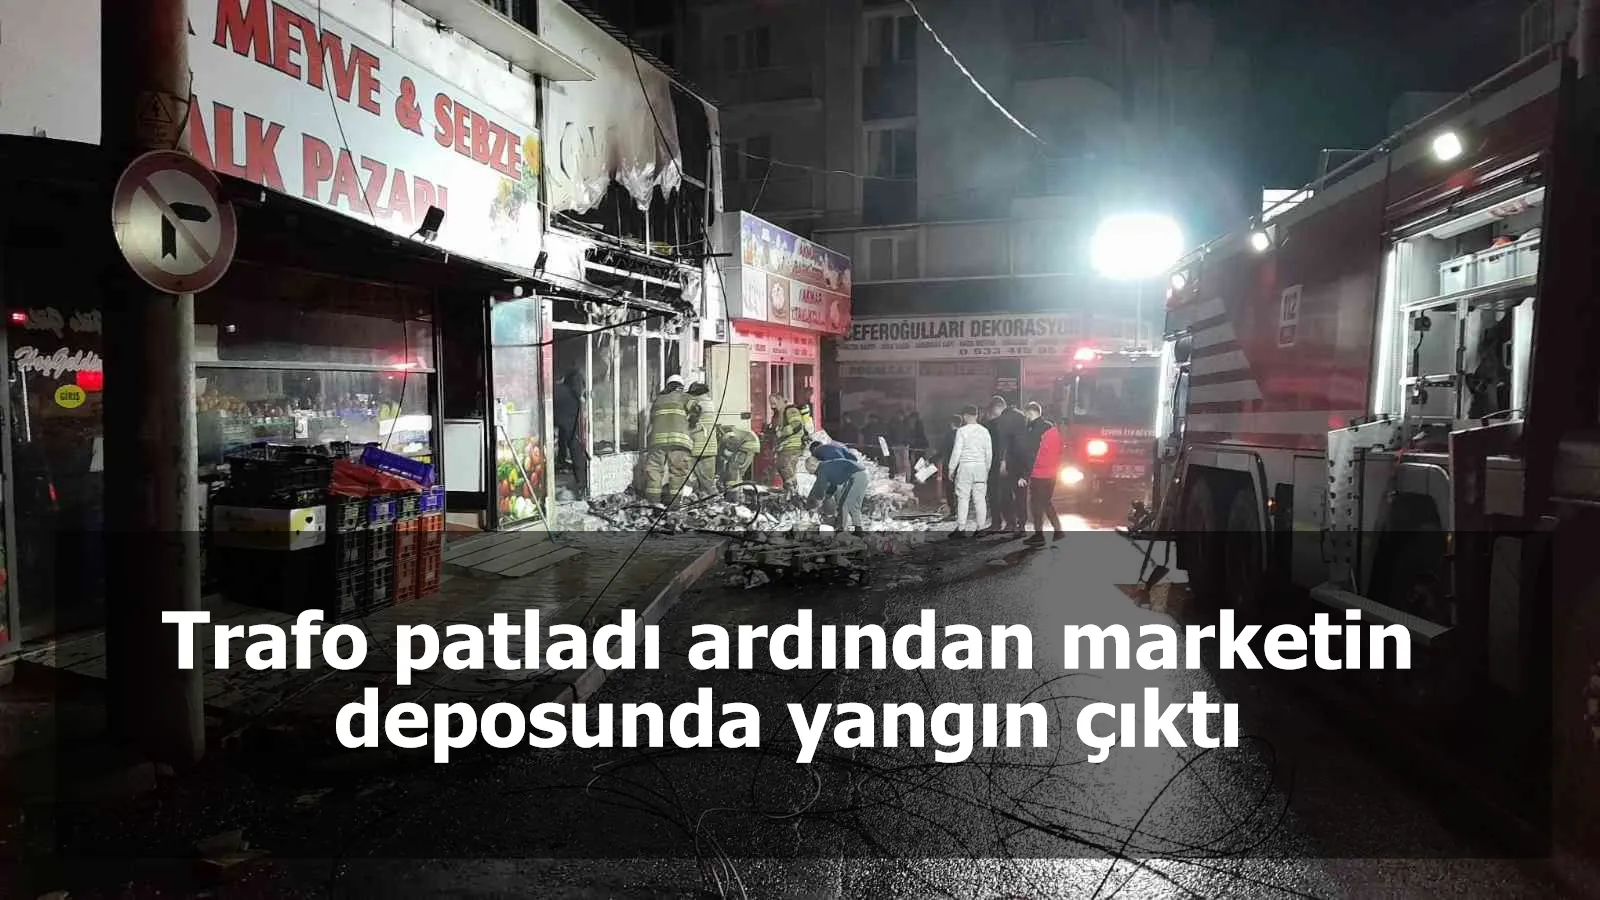 Trafo patladı ardından marketin deposunda yangın çıktı